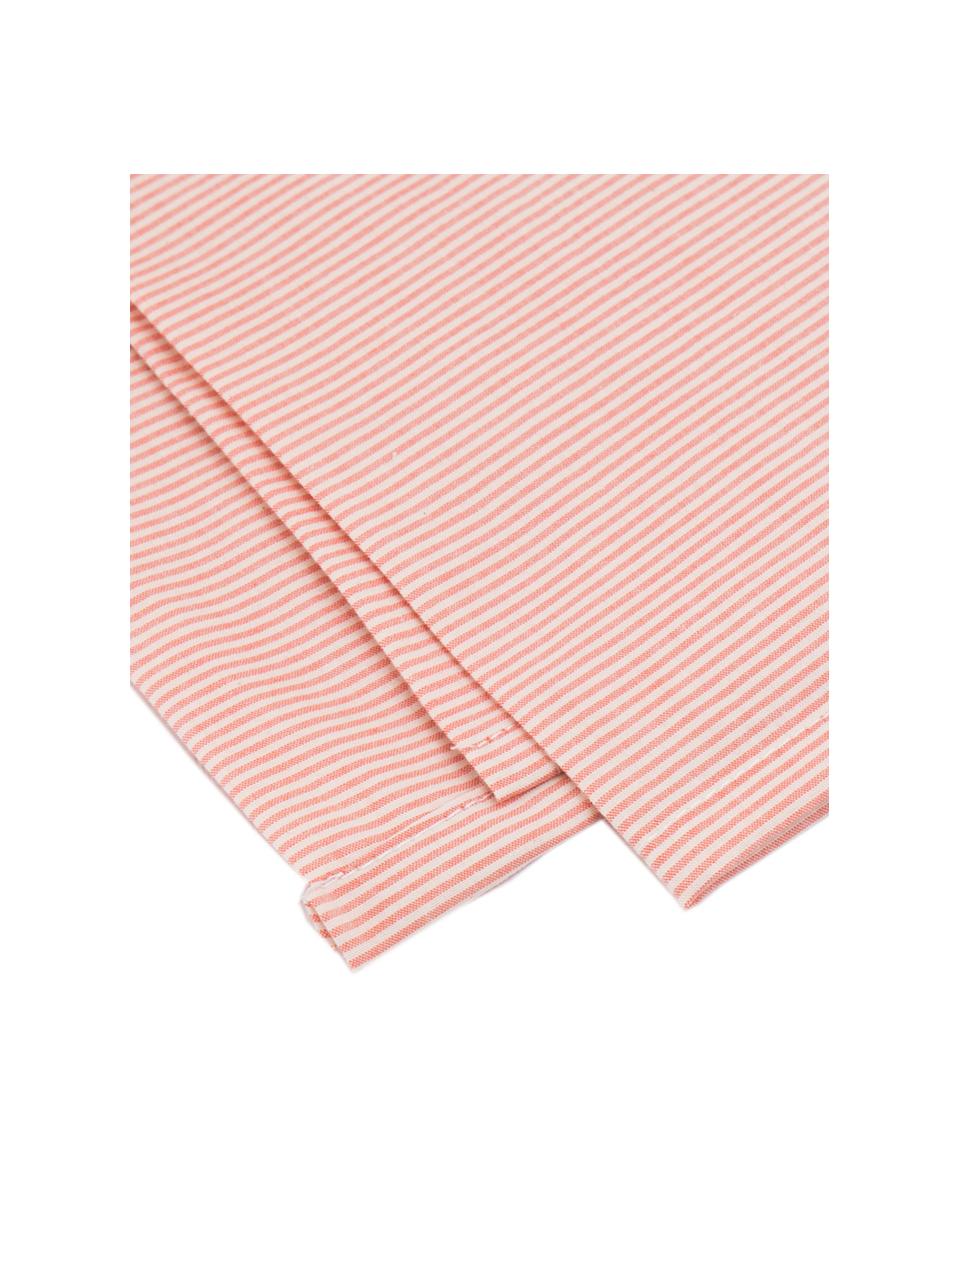 Parure copripiumino in cotone Stripes, Terracotta, crema, 155 x 260 cm + 1 federa + 1 lenzuolo con angoli